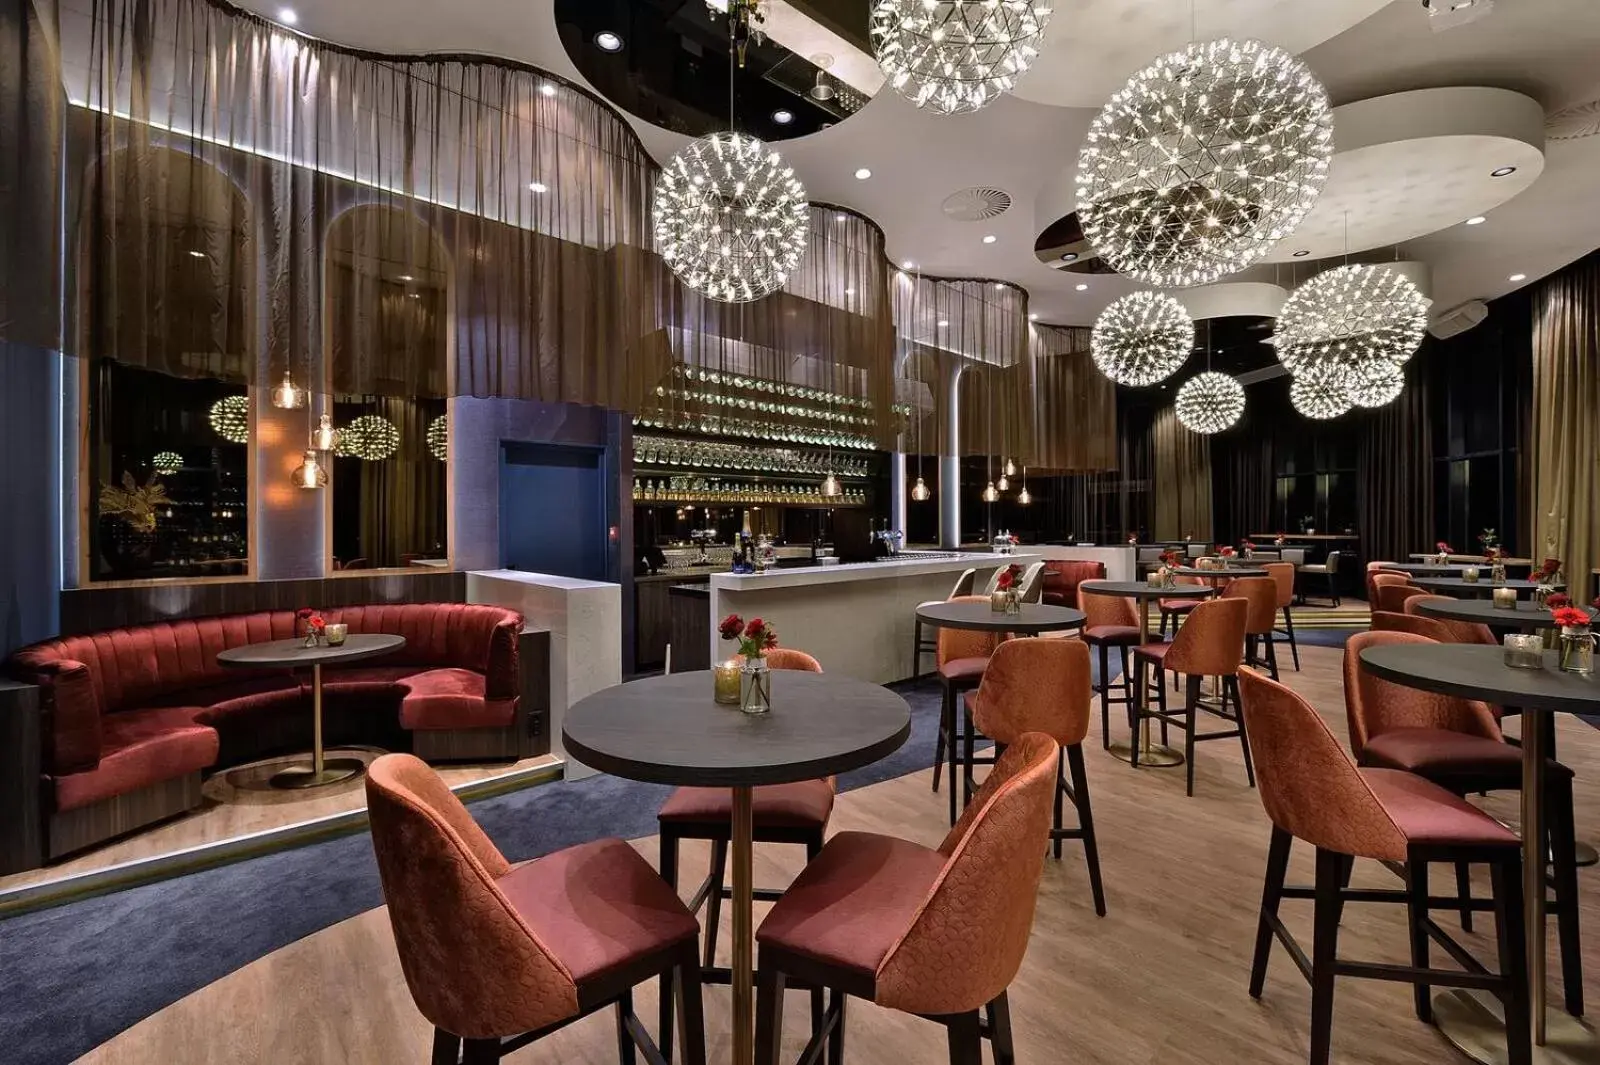 Restaurant/places to eat, Lounge/Bar in Van der Valk Hotel Tiel